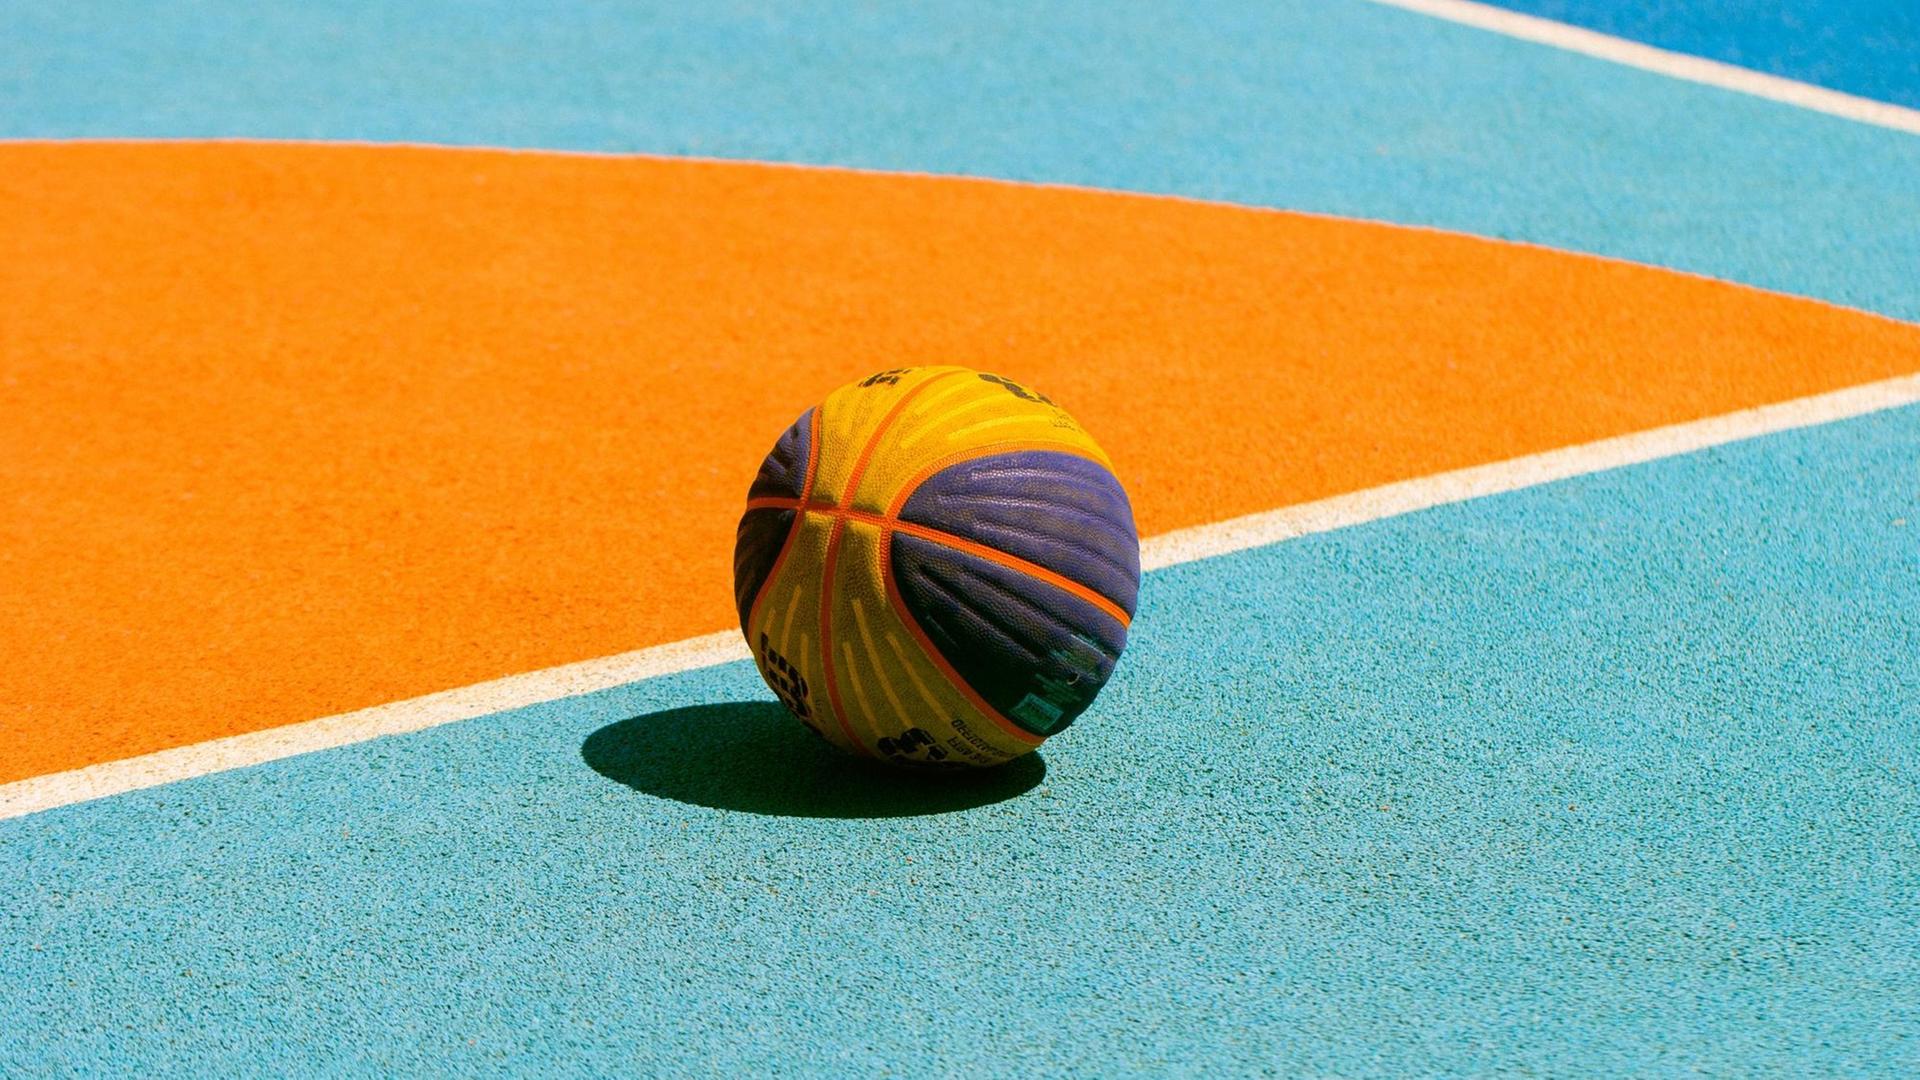 Ein Ball auf einem Basketball-Spielfeld.